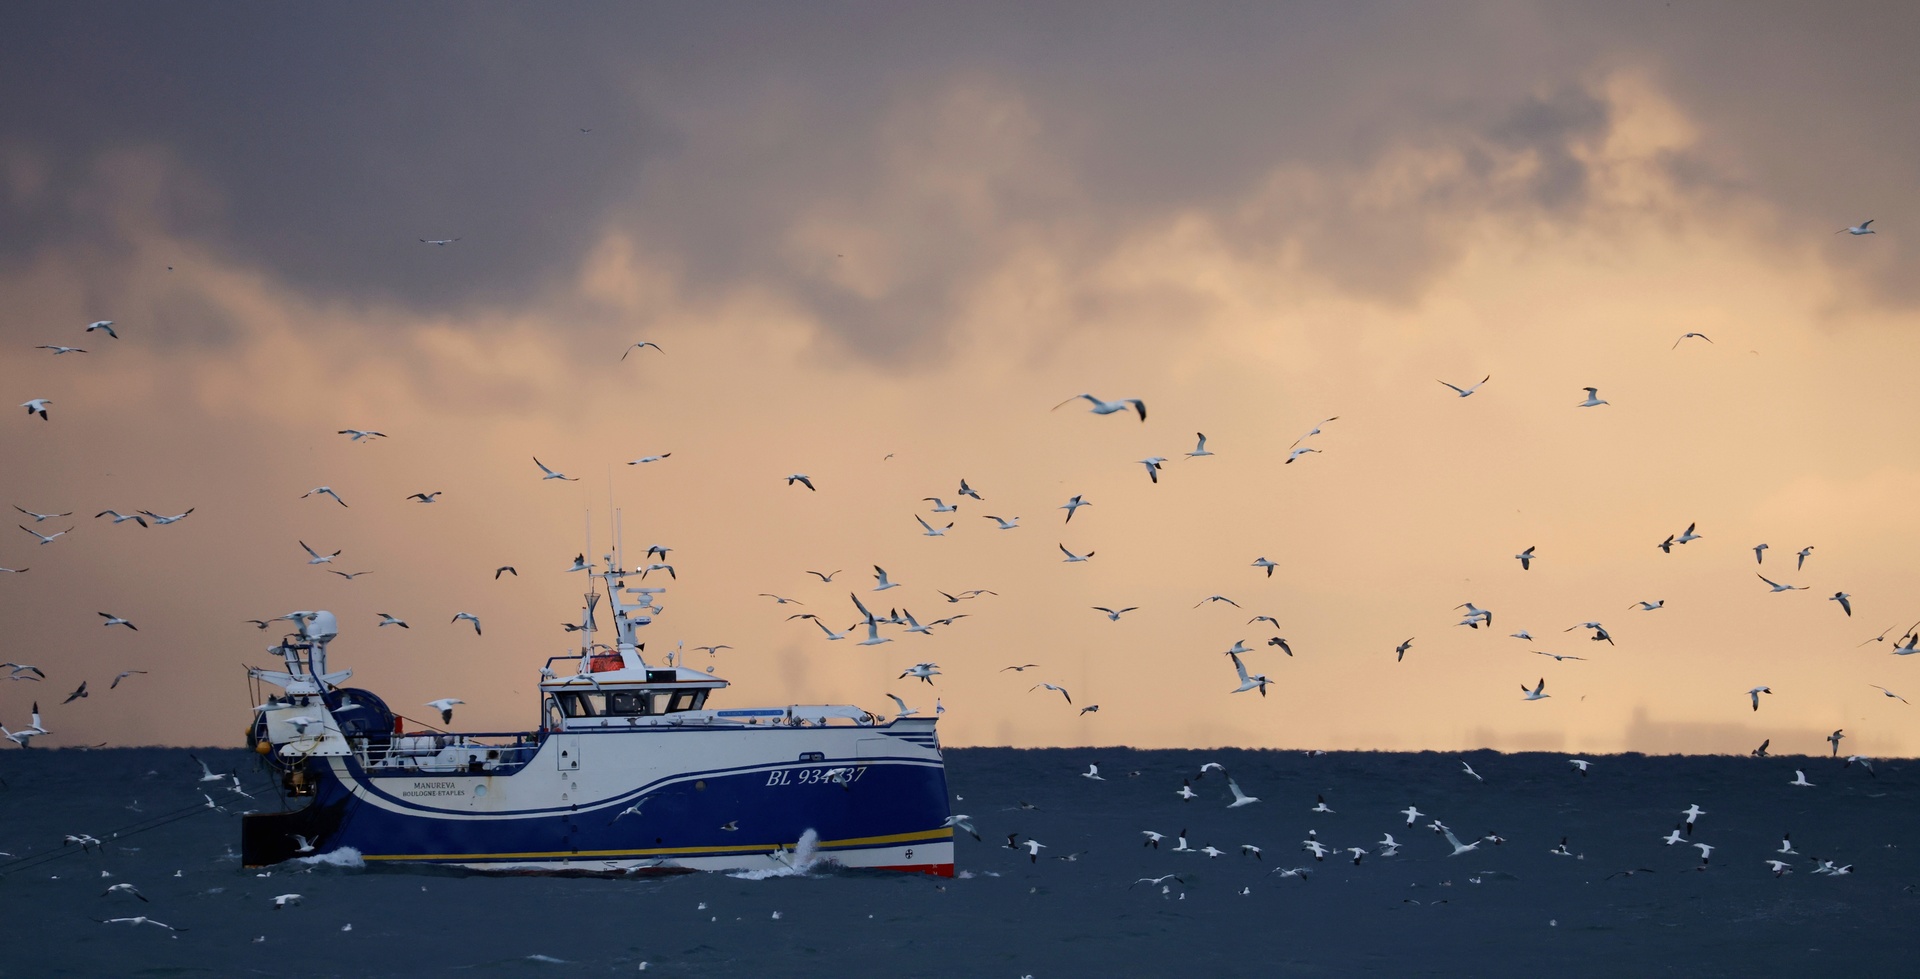 بريطانيا ستمنع الصيد البحري الأوروبي في مياهها إذا لم يتم الاتفاق بشأن الـ 